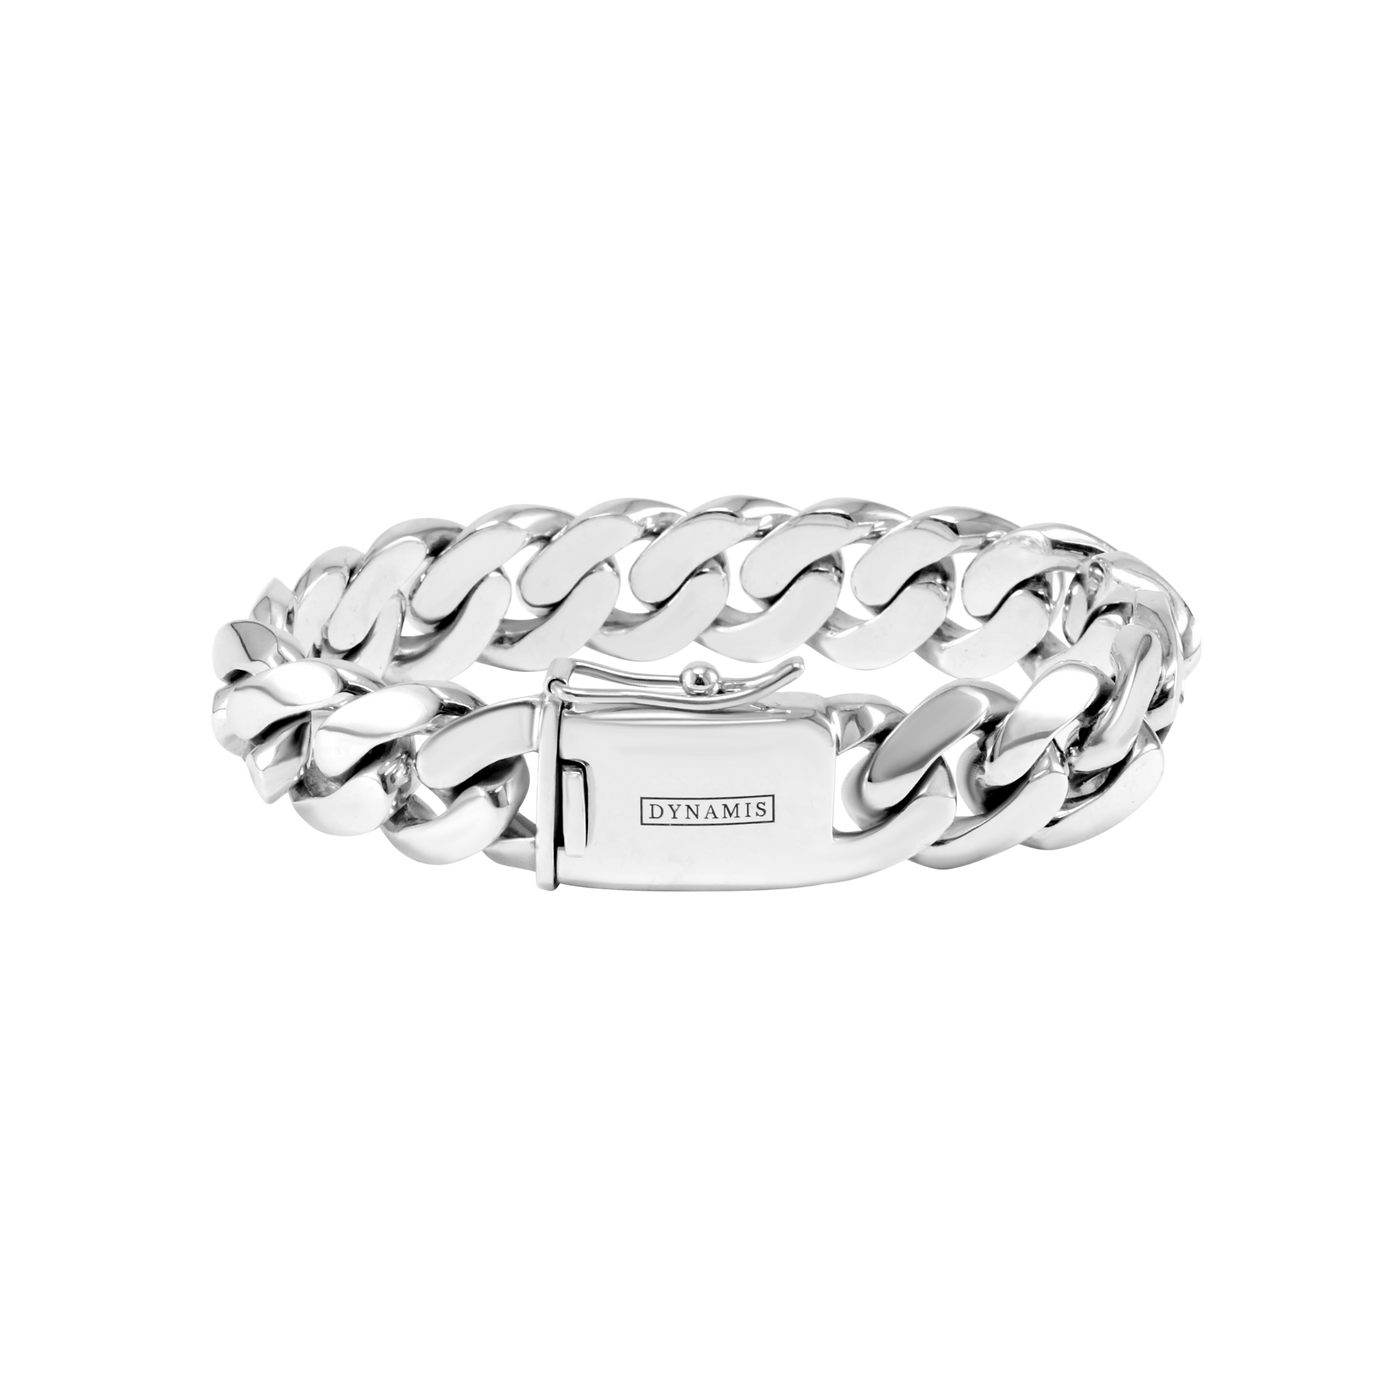 Silver Cuban bracelet (16 mm)